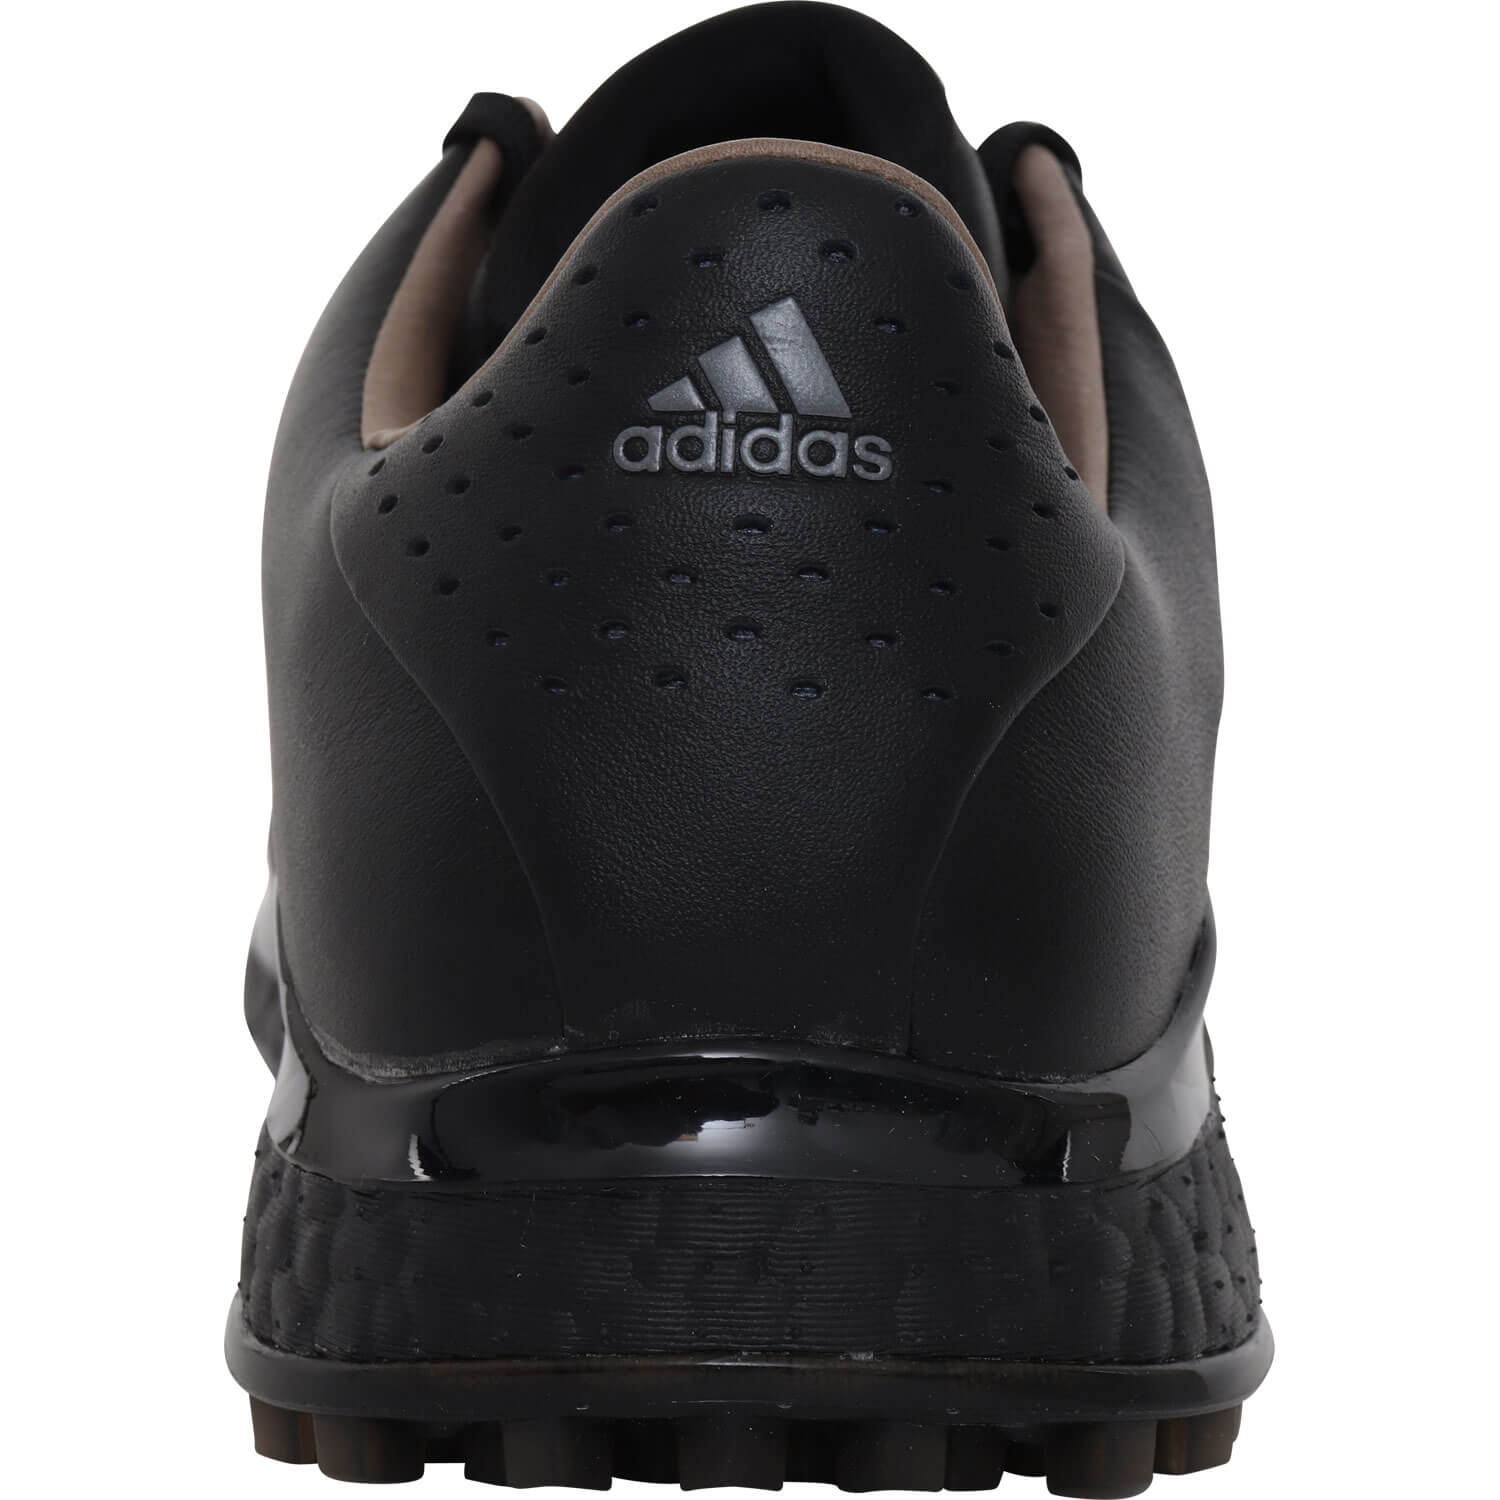 Adidas Tour360 XT-SL 2 (Wide) Black/Silver Herren